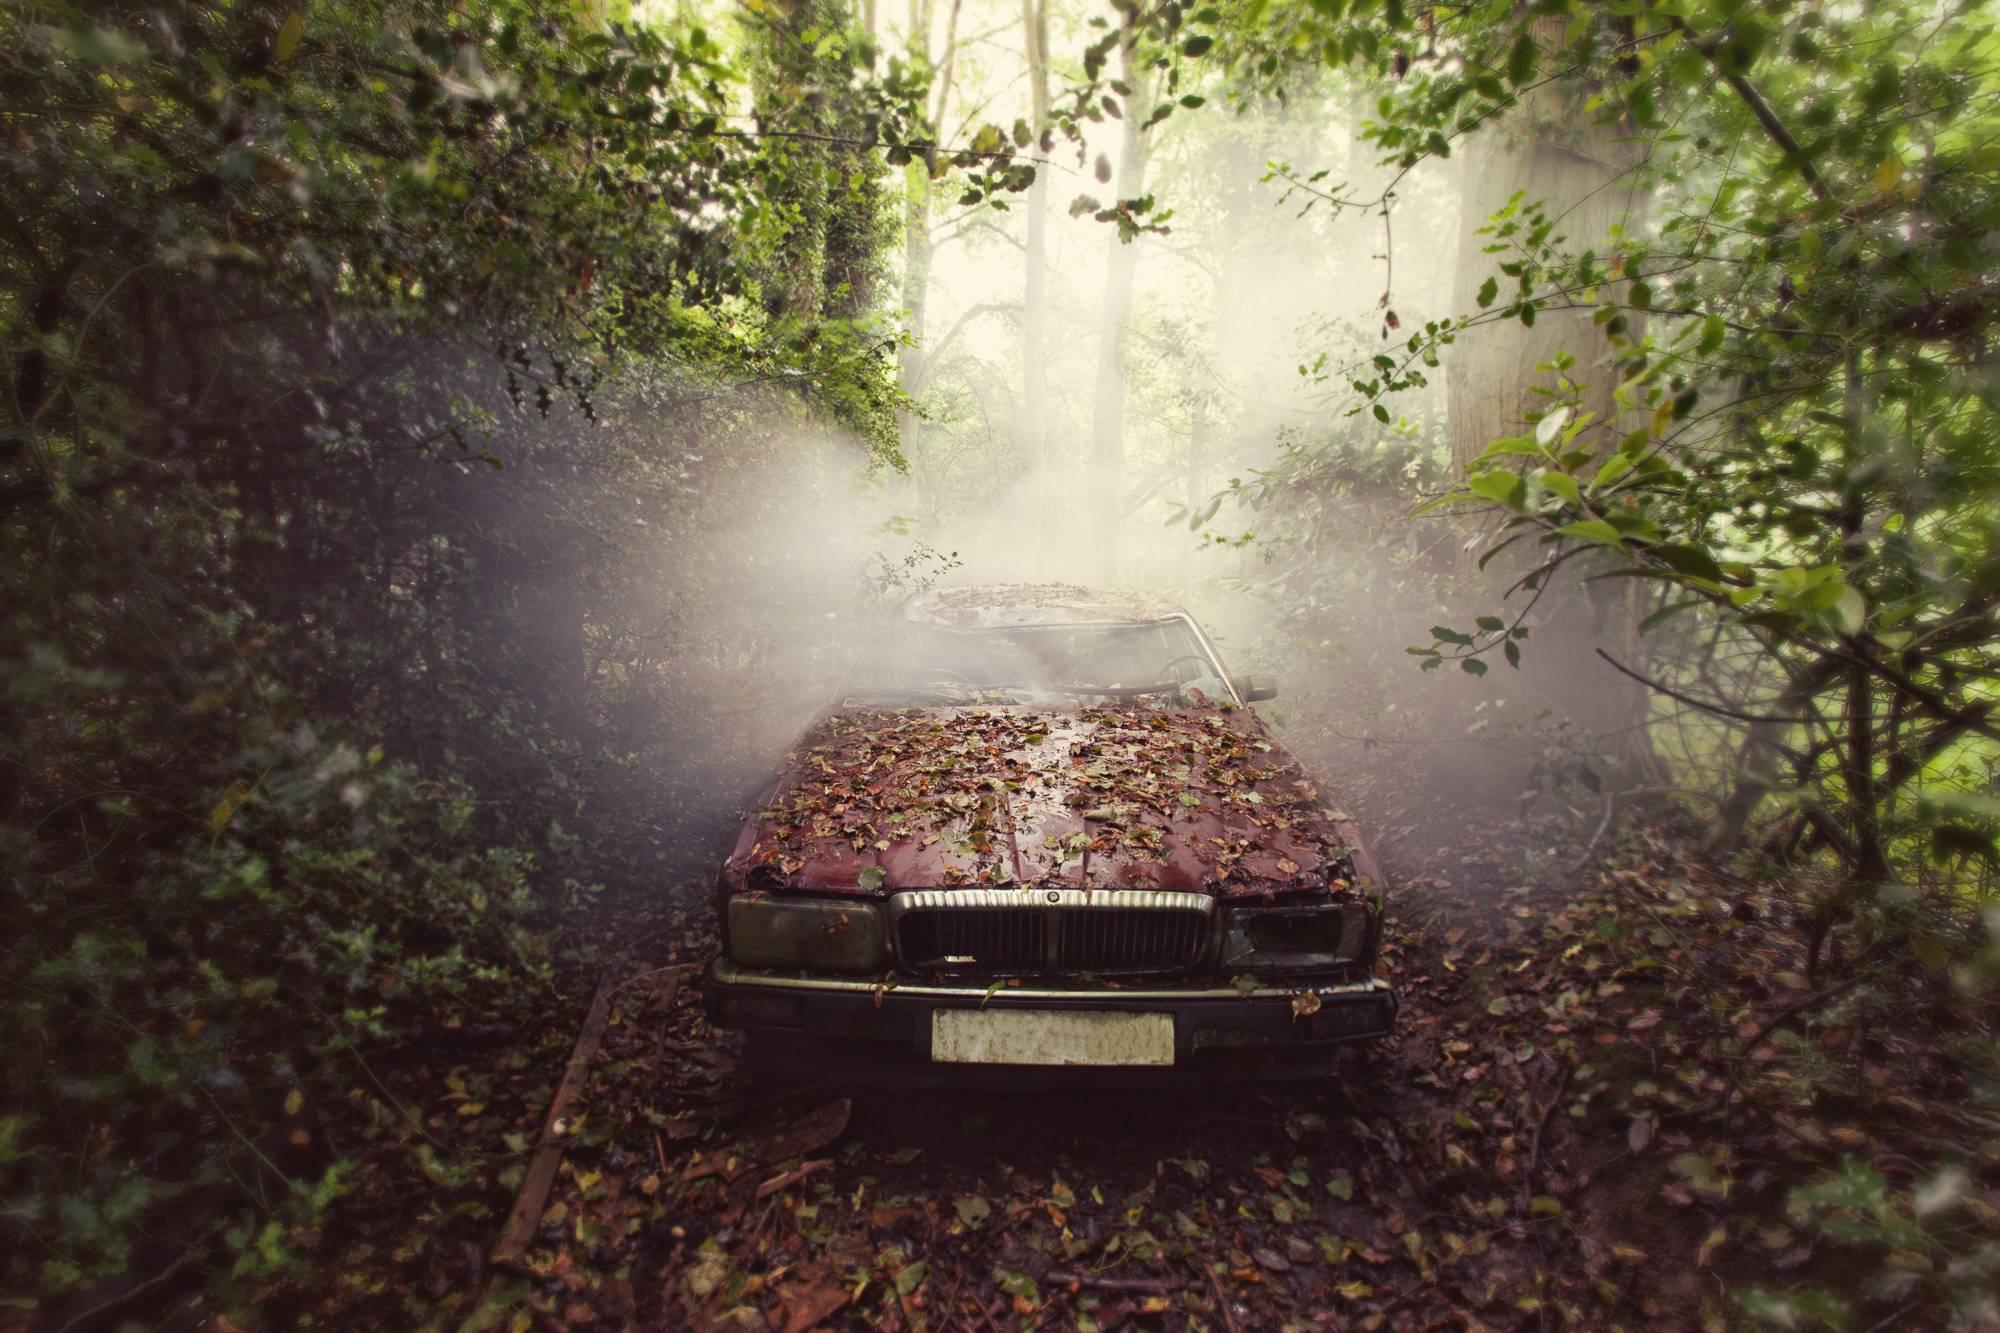 Jaguar by Gina Soden - Contemporary fine art photography, urbex, retro car